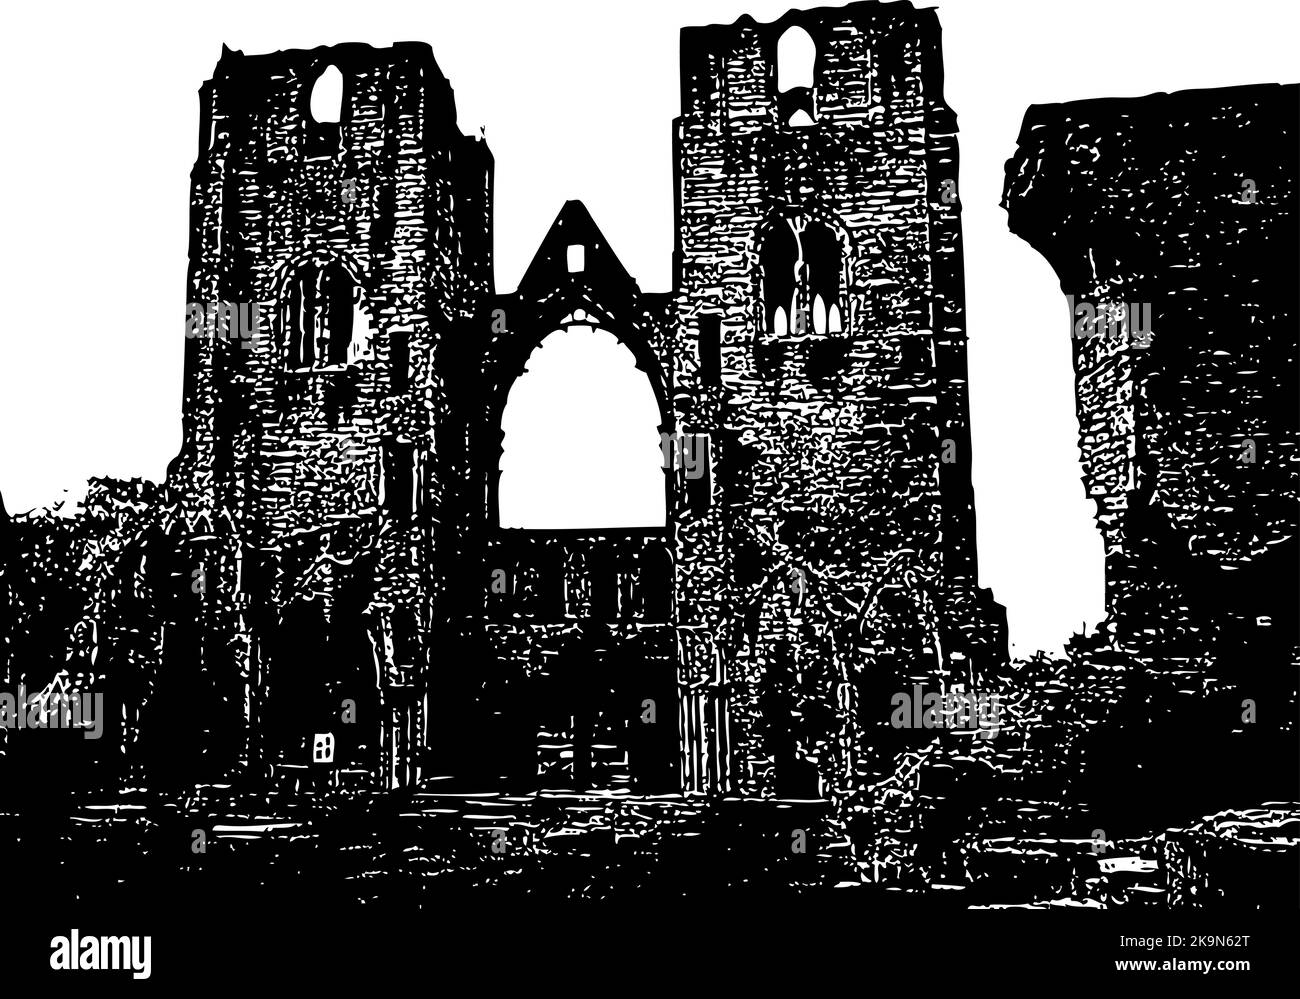 Alte Ruinen von der alten Kirche mit Türmen und Eingang. Kontrastreiche Schwarz-Weiß-Darstellung. Elgin Stock Vektor